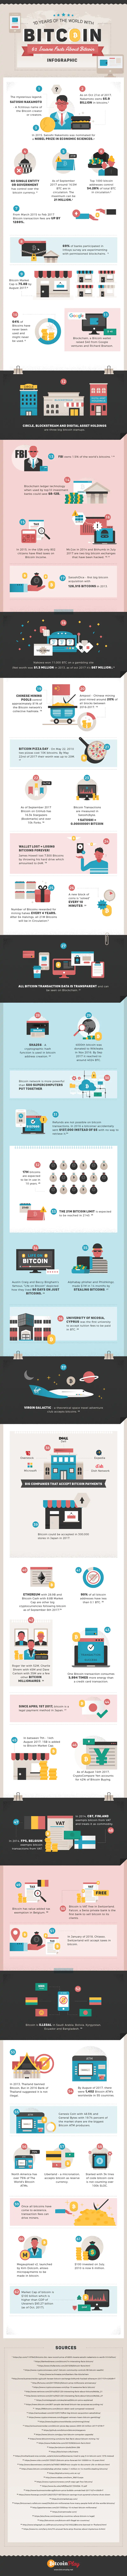 bitcoin fact 2 | Infographie : 62 trucs dingues à propos du Bitcoin !